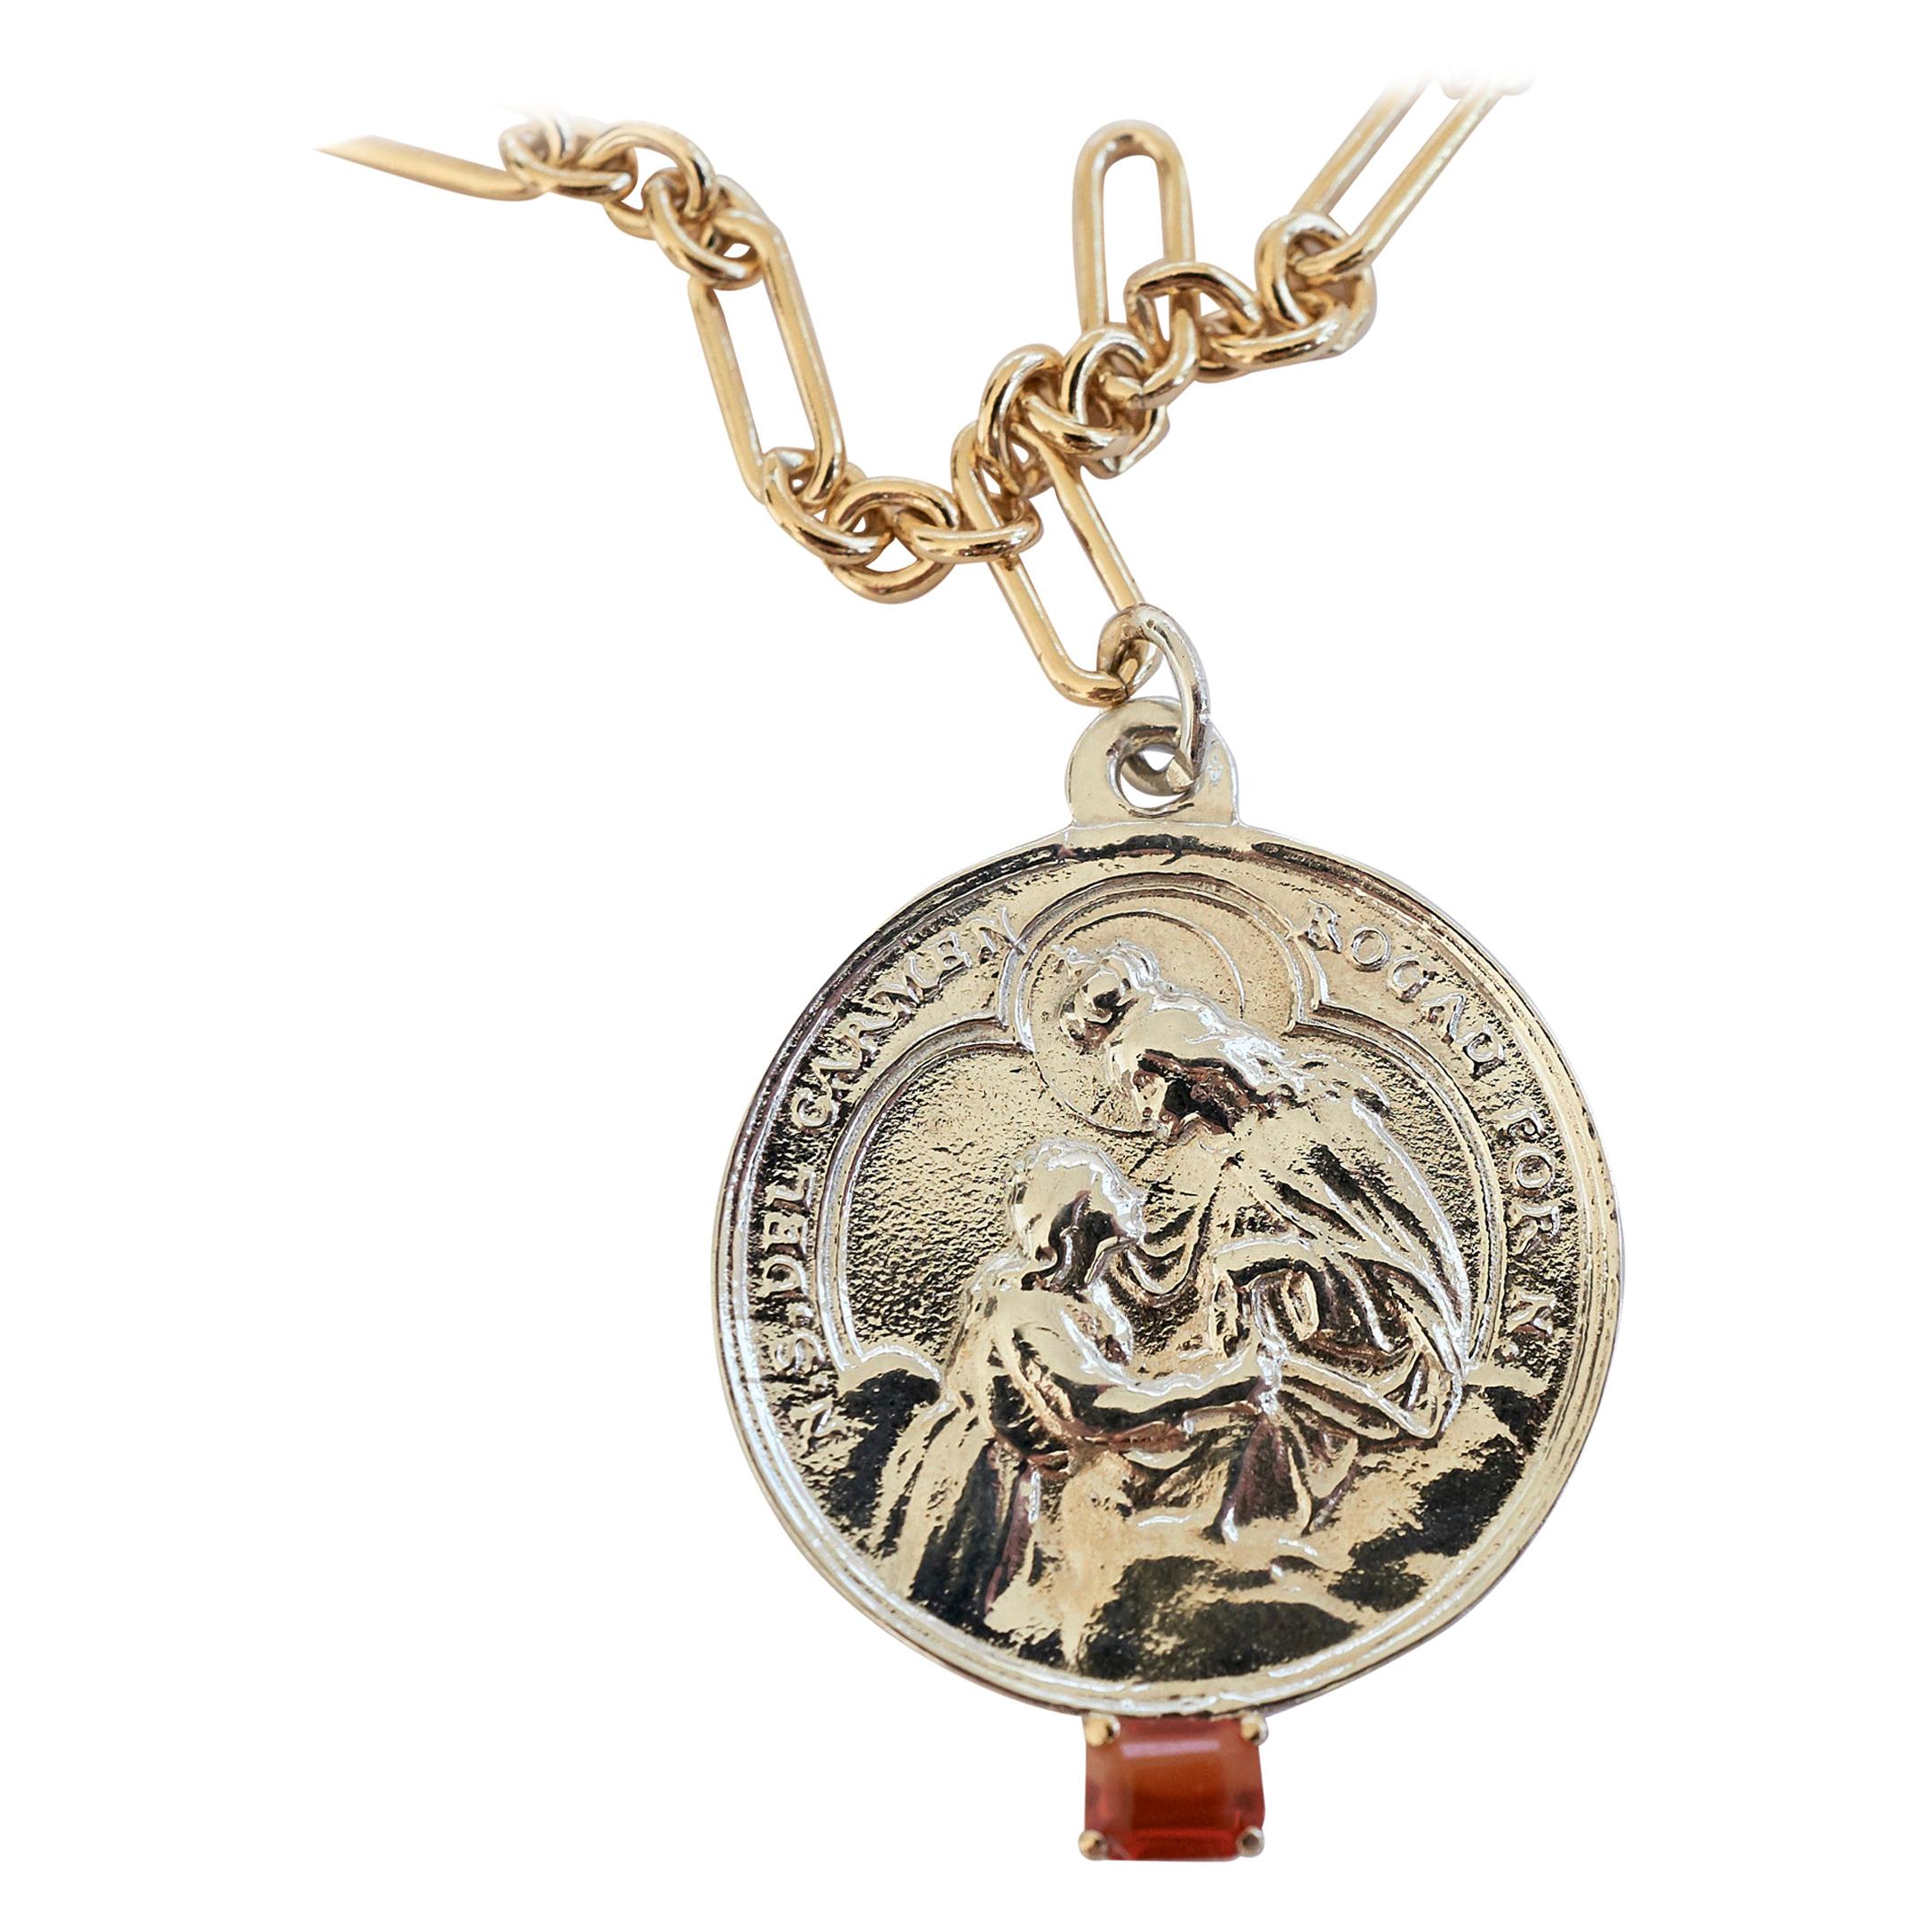 Opale de feu  J Dauphin, collier à chaîne remplie d'or avec pendentif médaille de la Vierge Marie en argent